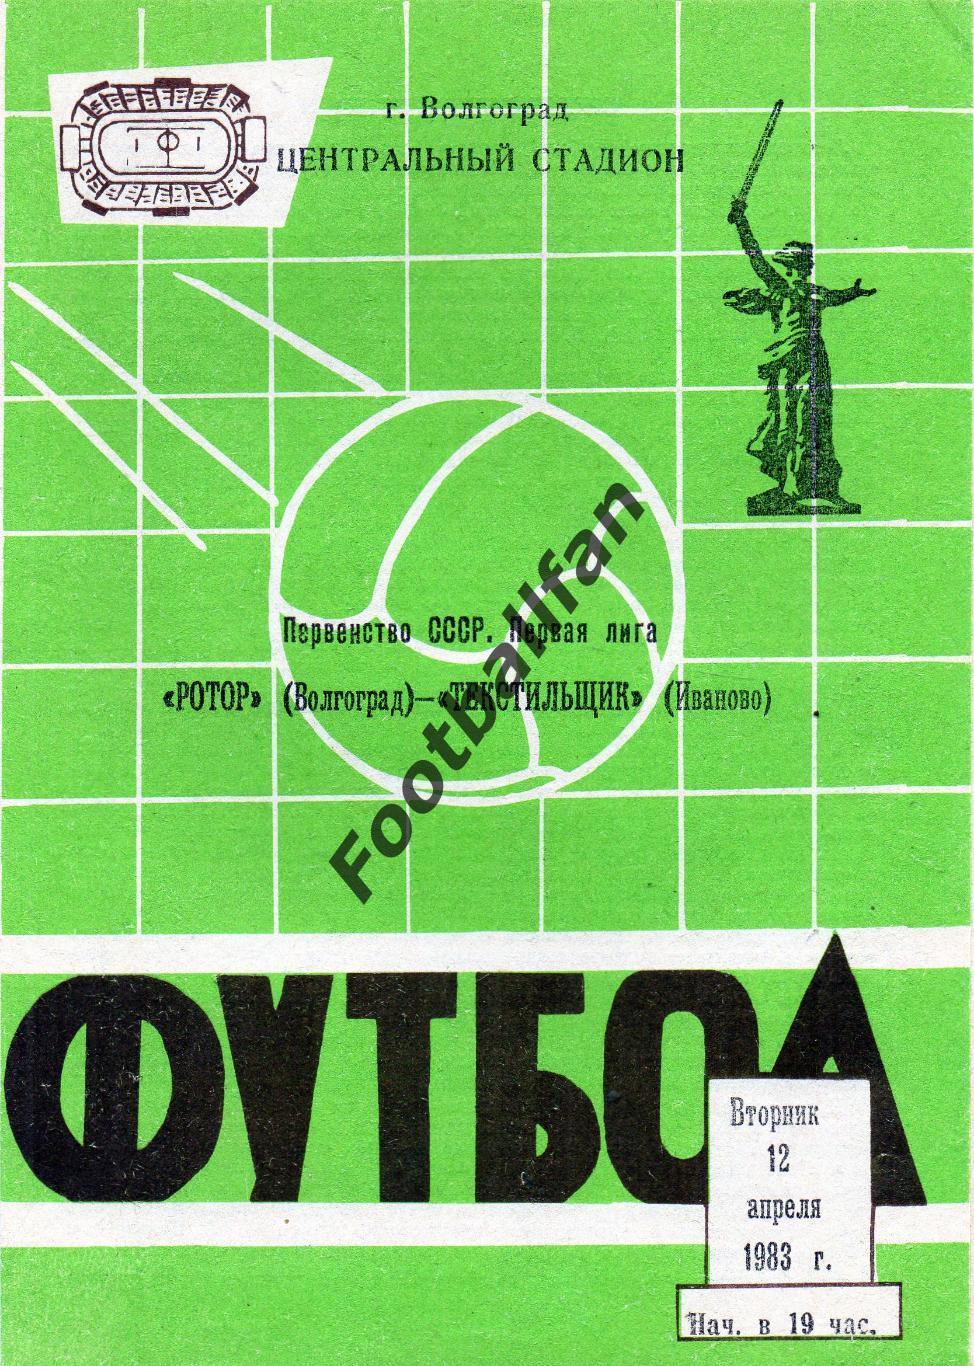 Ротор Волгоград - Текстильщик Иваново 12.04.1983